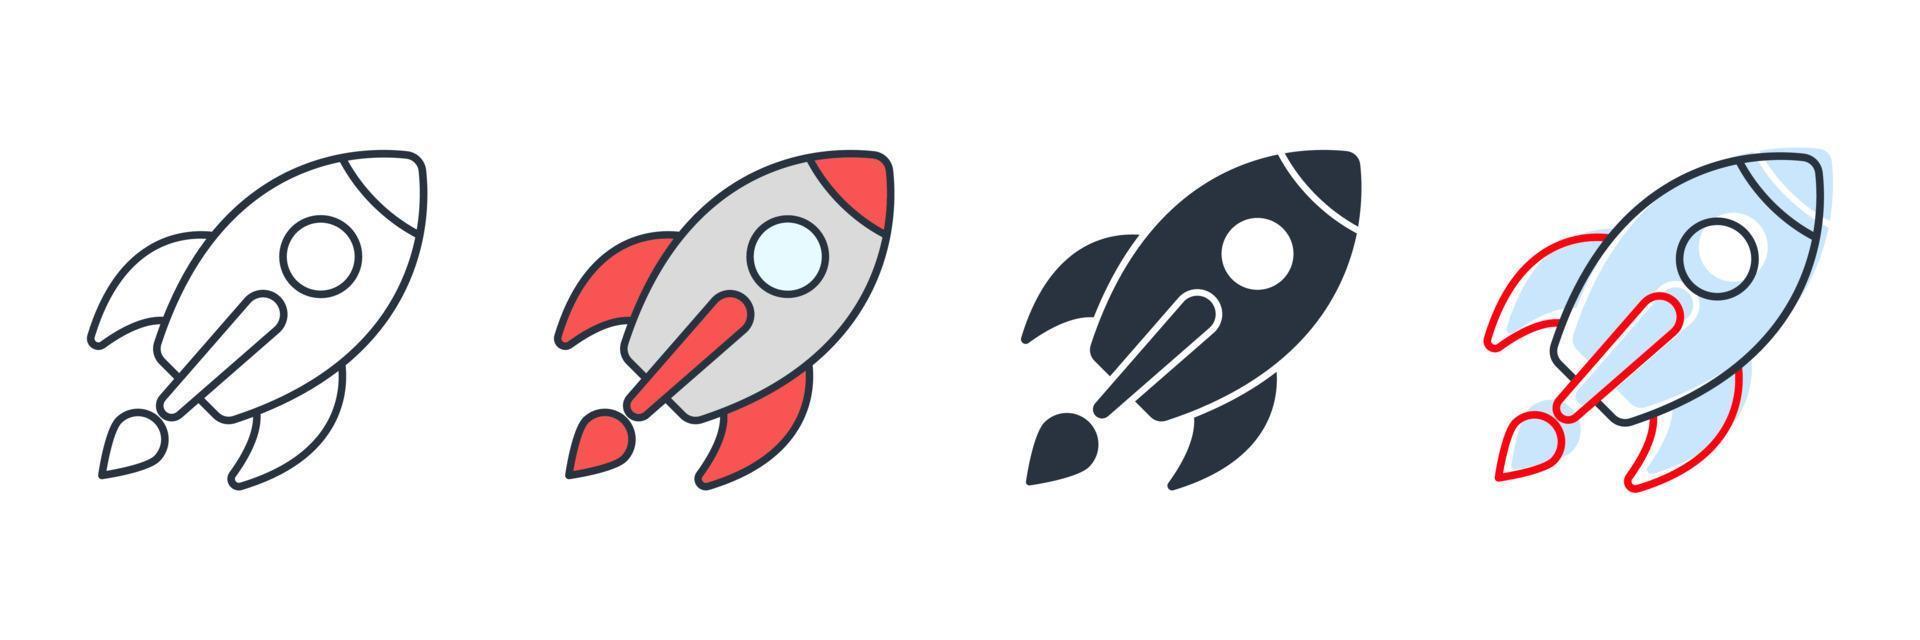 ruimtevaart pictogram logo vectorillustratie. raketsymboolsjabloon voor grafische en webdesigncollectie vector